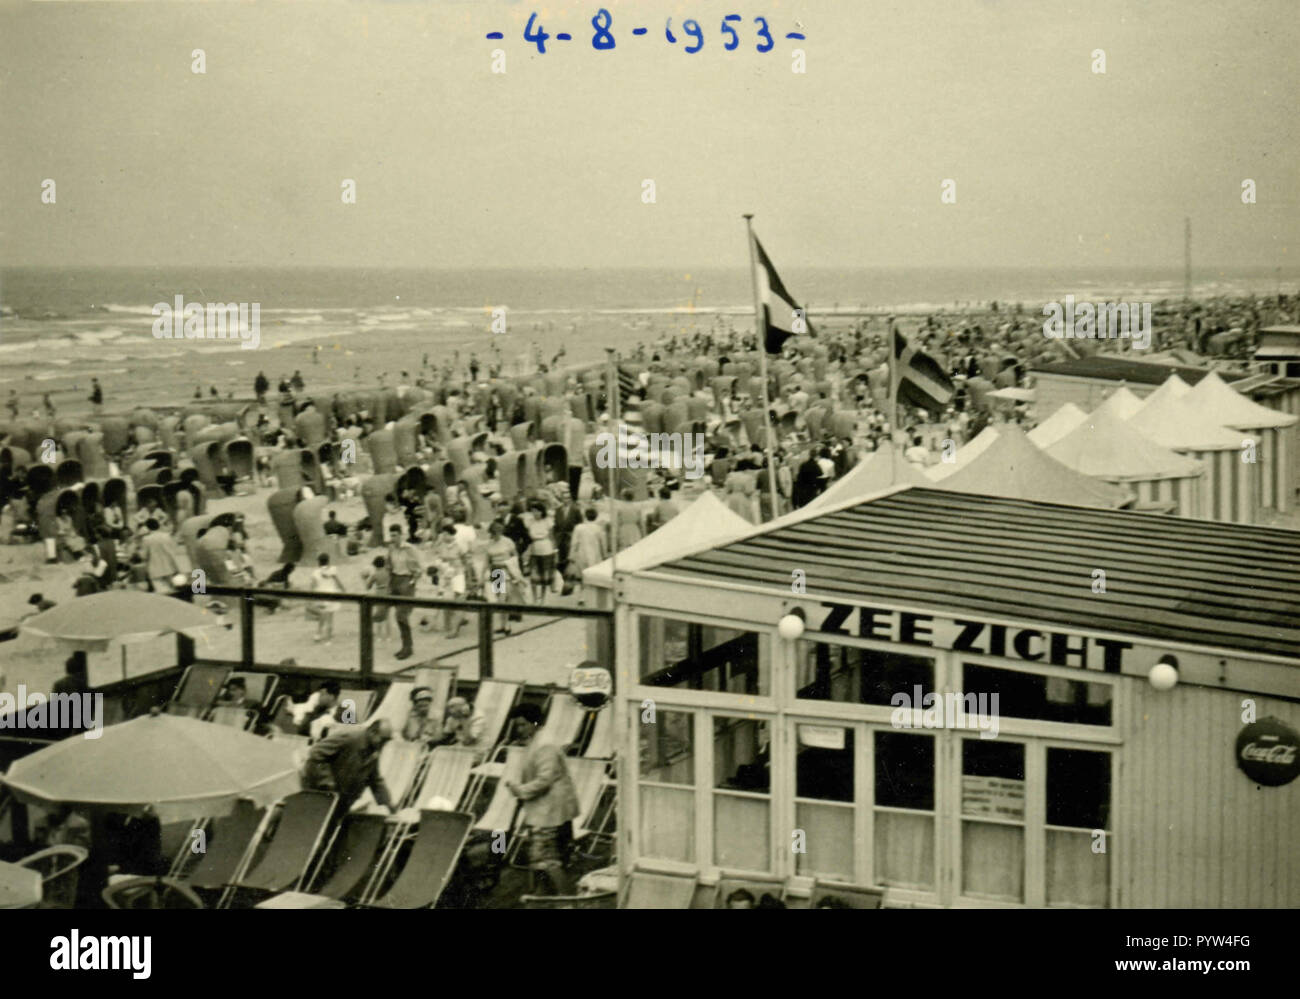 Strand von Scheveningen, Den Haag, Niederlande 1953 Stockfoto